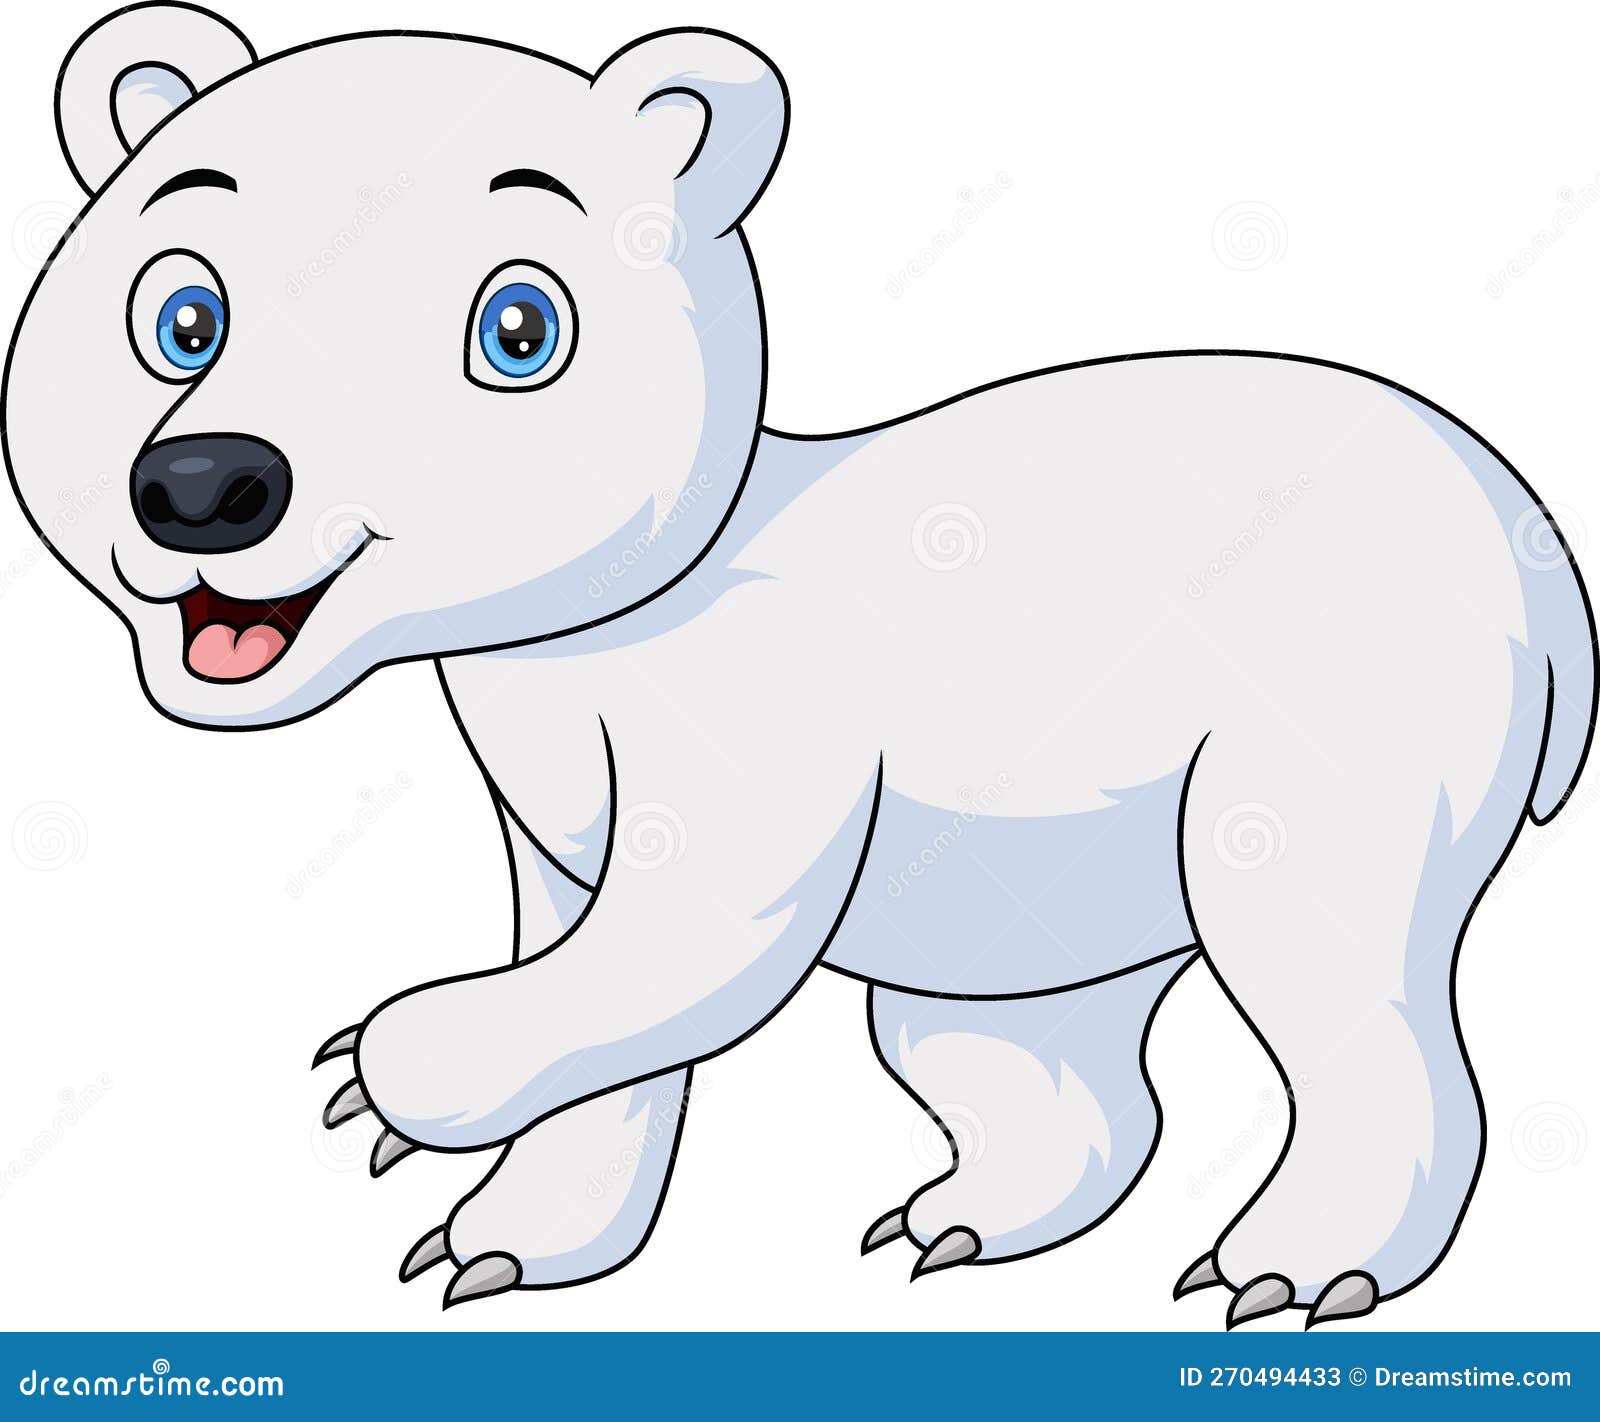 Teddy bear hand up icon ilustração bonito. personagem de desenho animado de  mascote de urso. conceito de ícone animal isolado